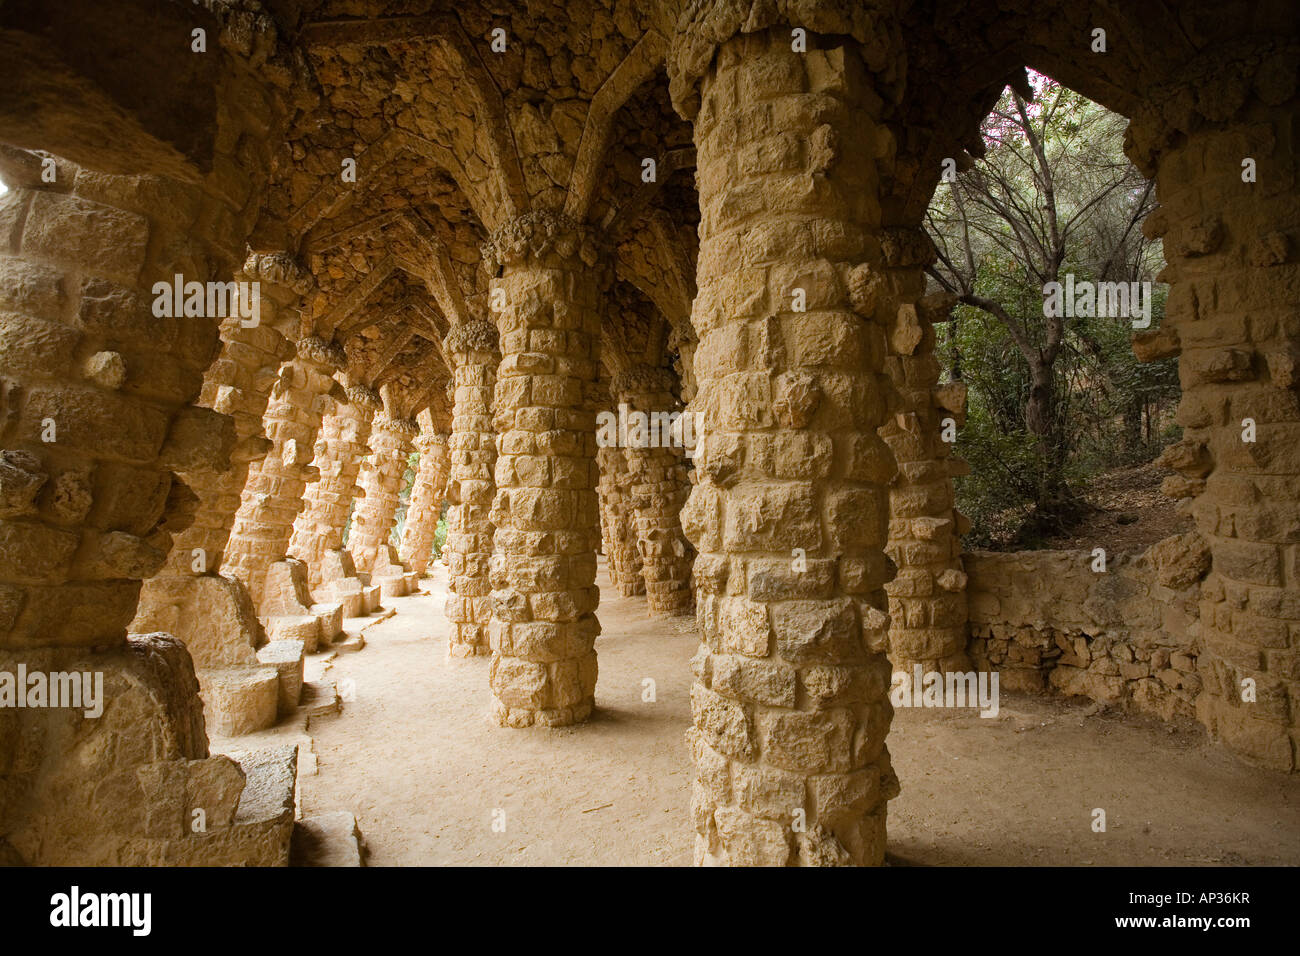 Parc Gueell, Antonoio Gaudi, Gracia, Barcelona, Spain Stock Photo